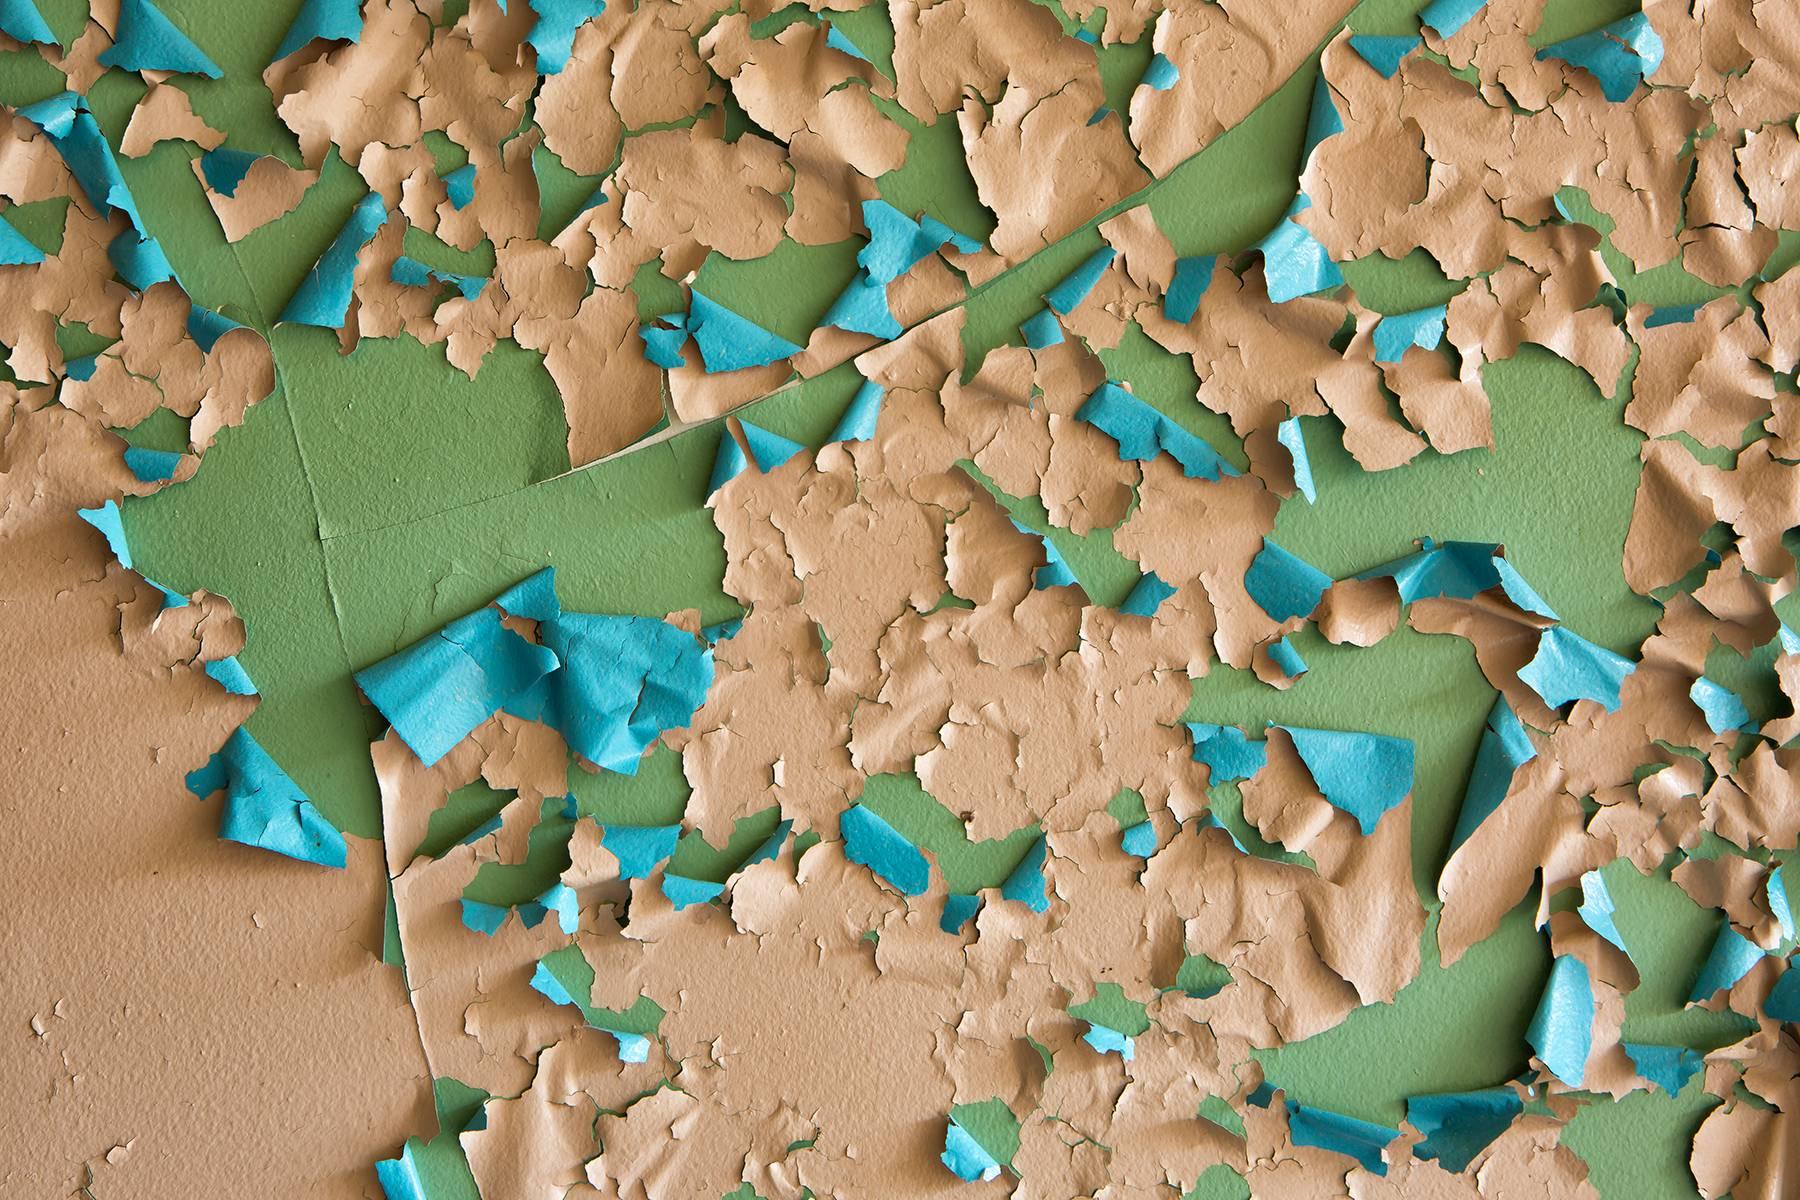 „Crumbling“, abstrakt, blassen Farbe, grün, blau, pfirsich, Farbfotografie – Photograph von Rebecca Skinner